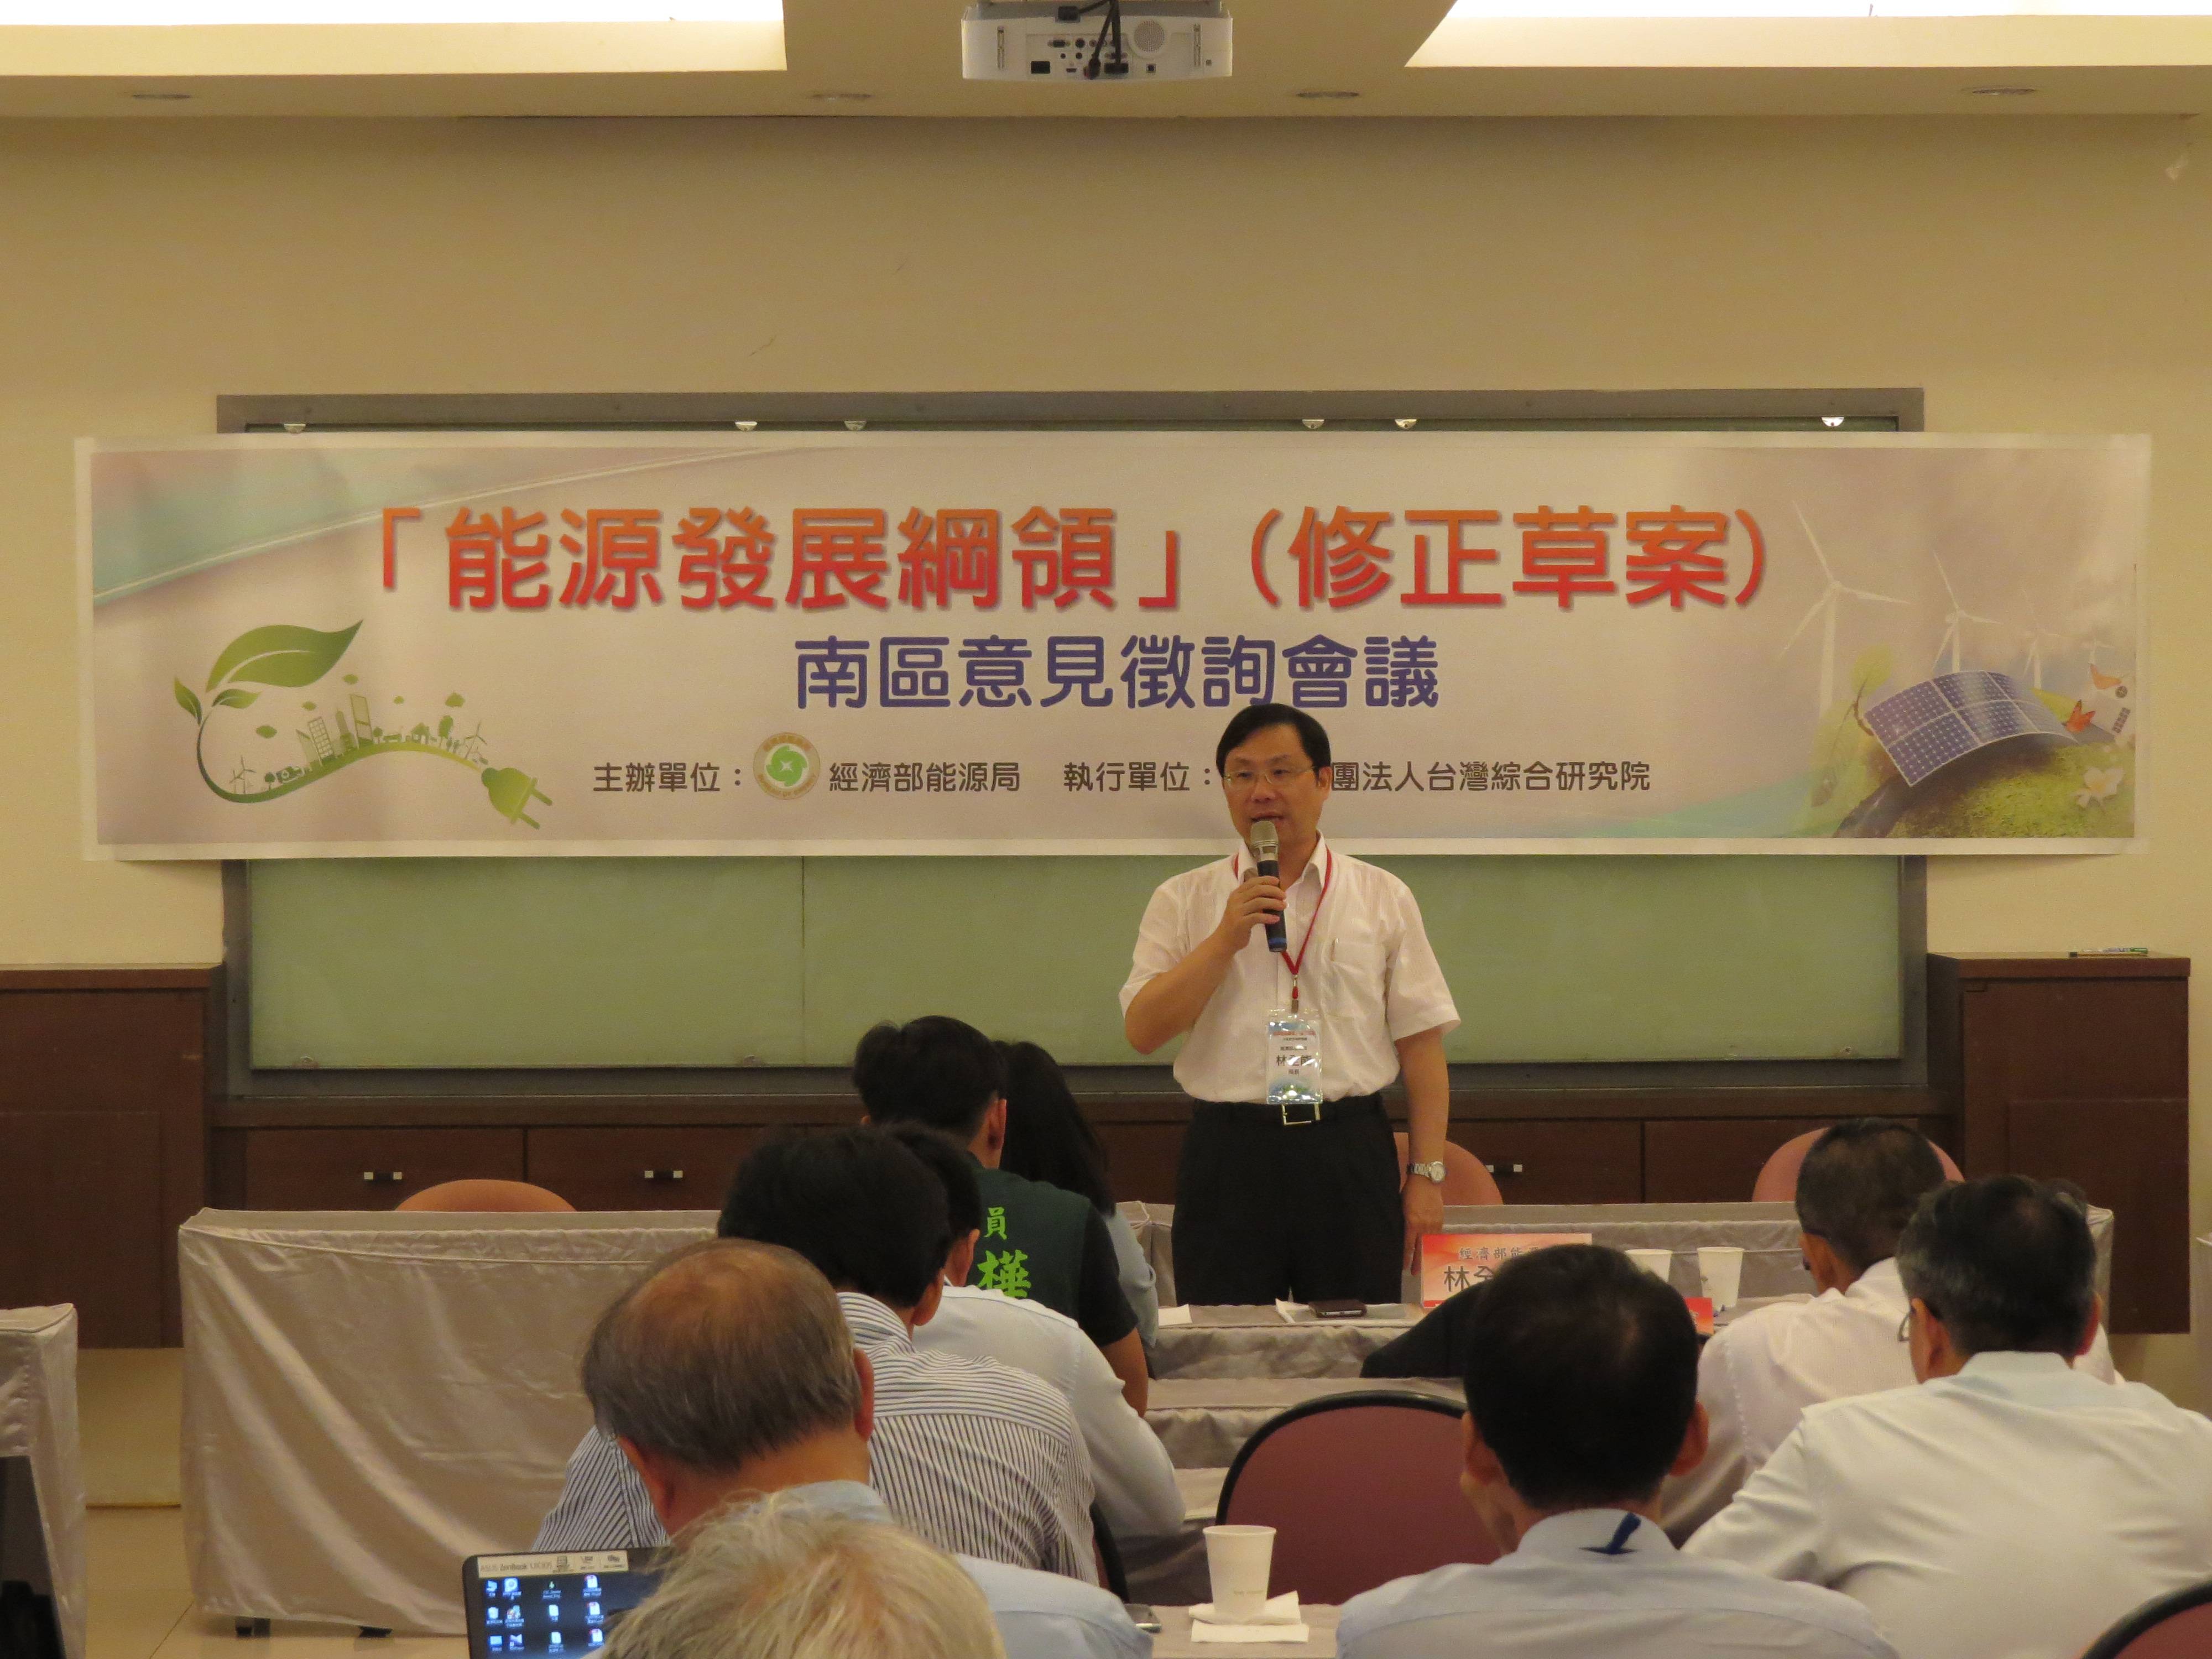 能源發展綱領2.0登場 引領台灣能源轉型